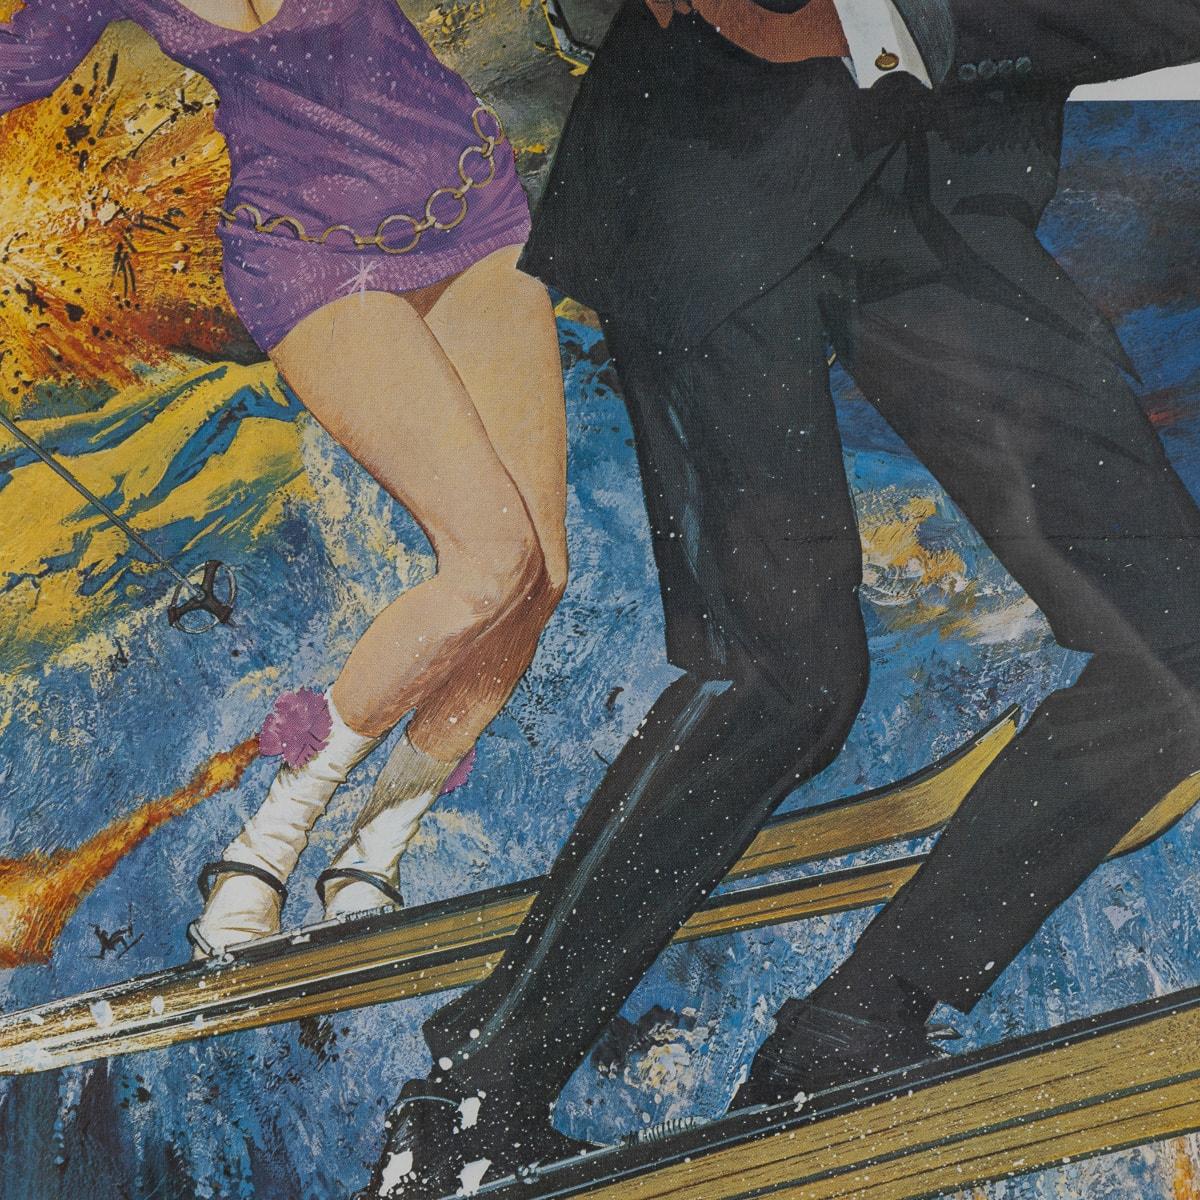 U.S Release James Bond 007 'On Her Majesty's Secret Service' Poster c.1969 For Sale 4